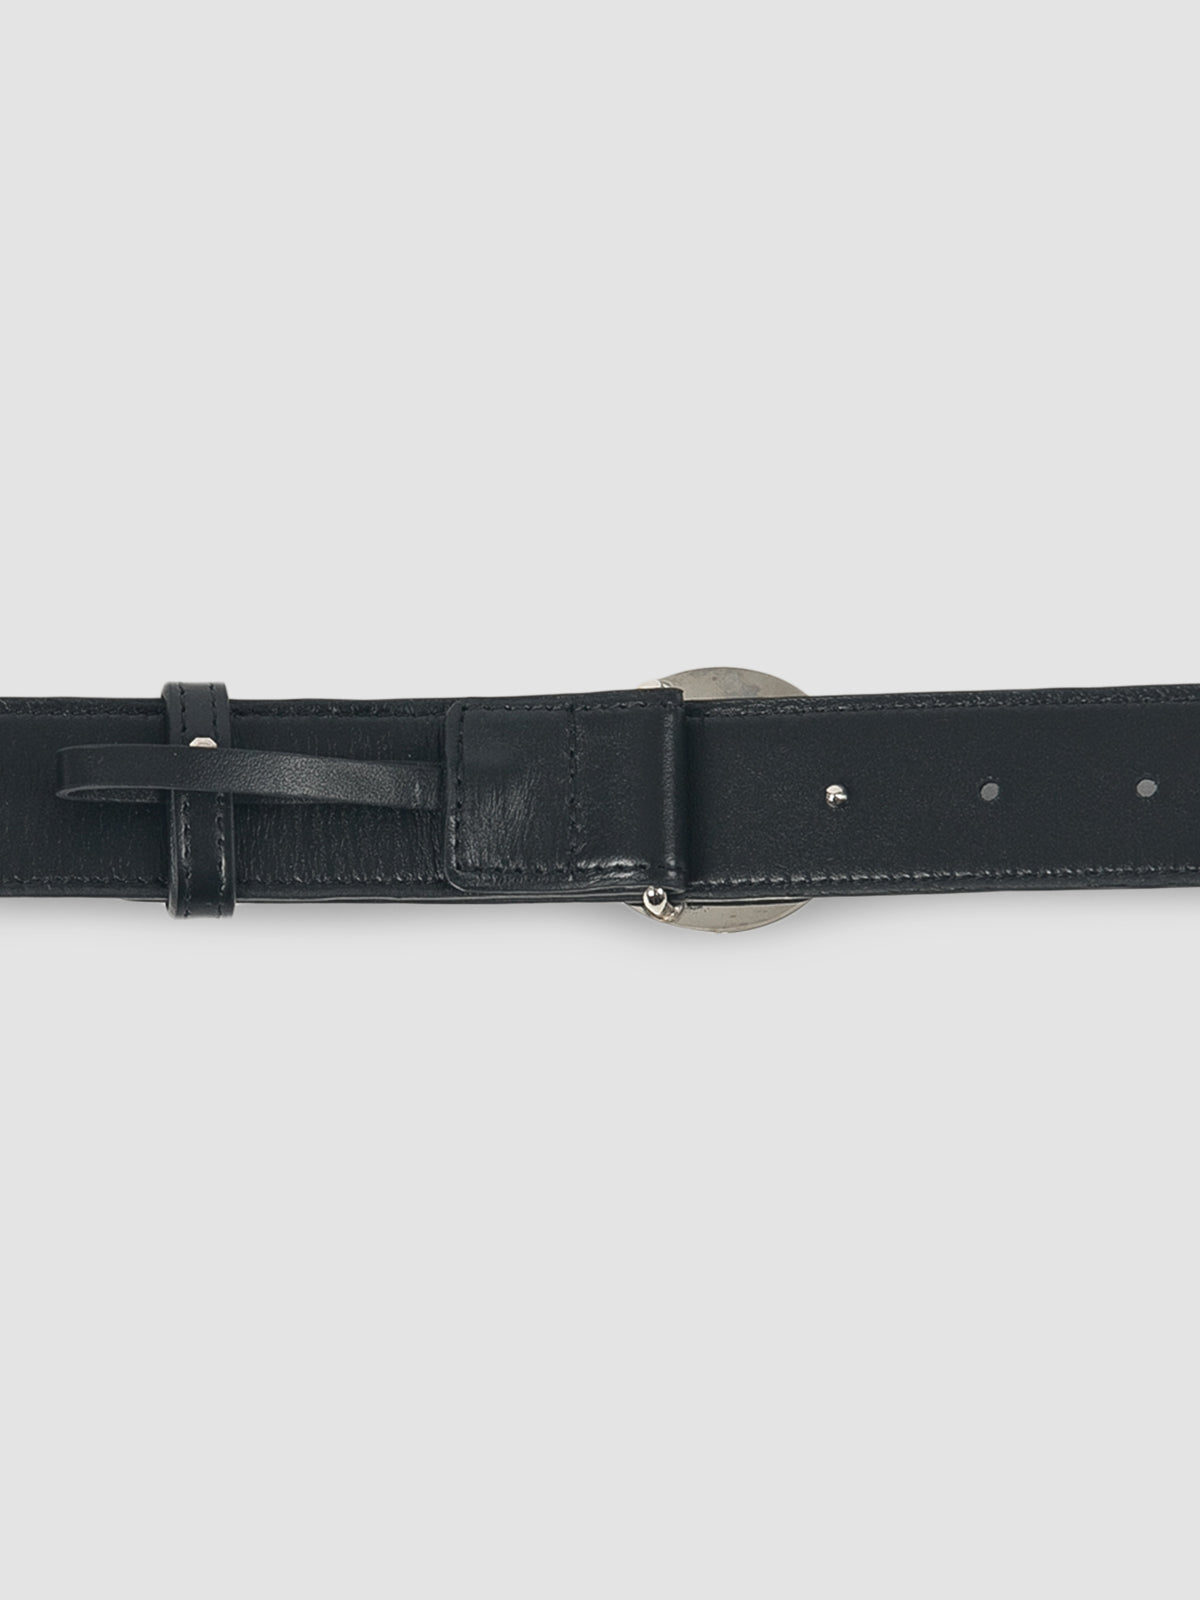 Black leather belt with Coperni logo